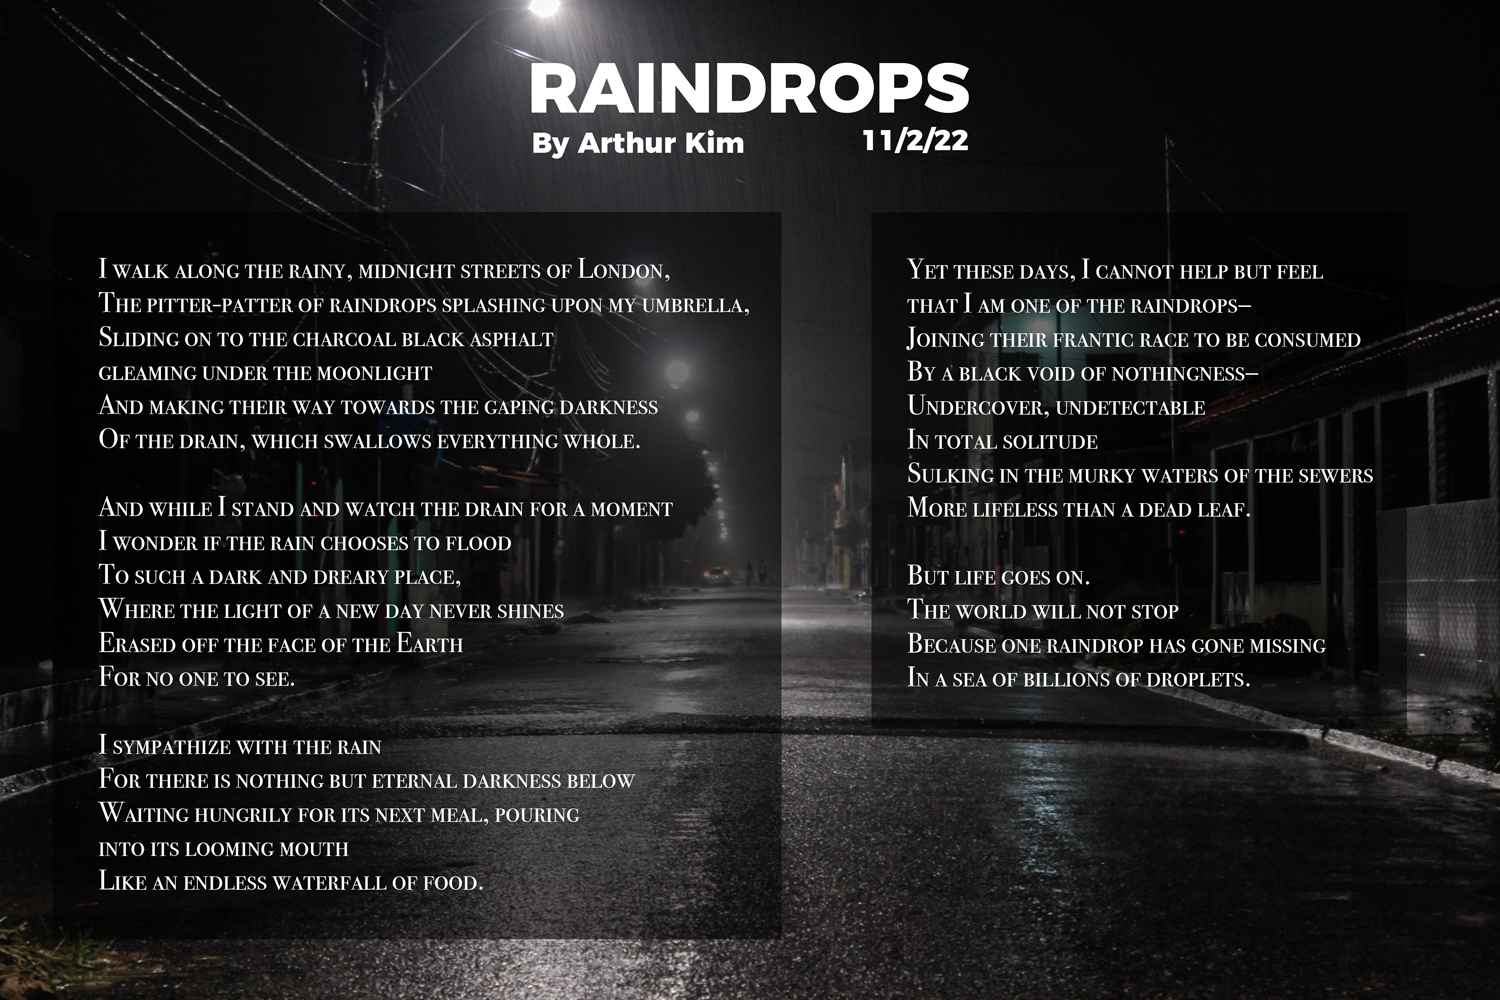 Poem by Arthur Kim Raindrops